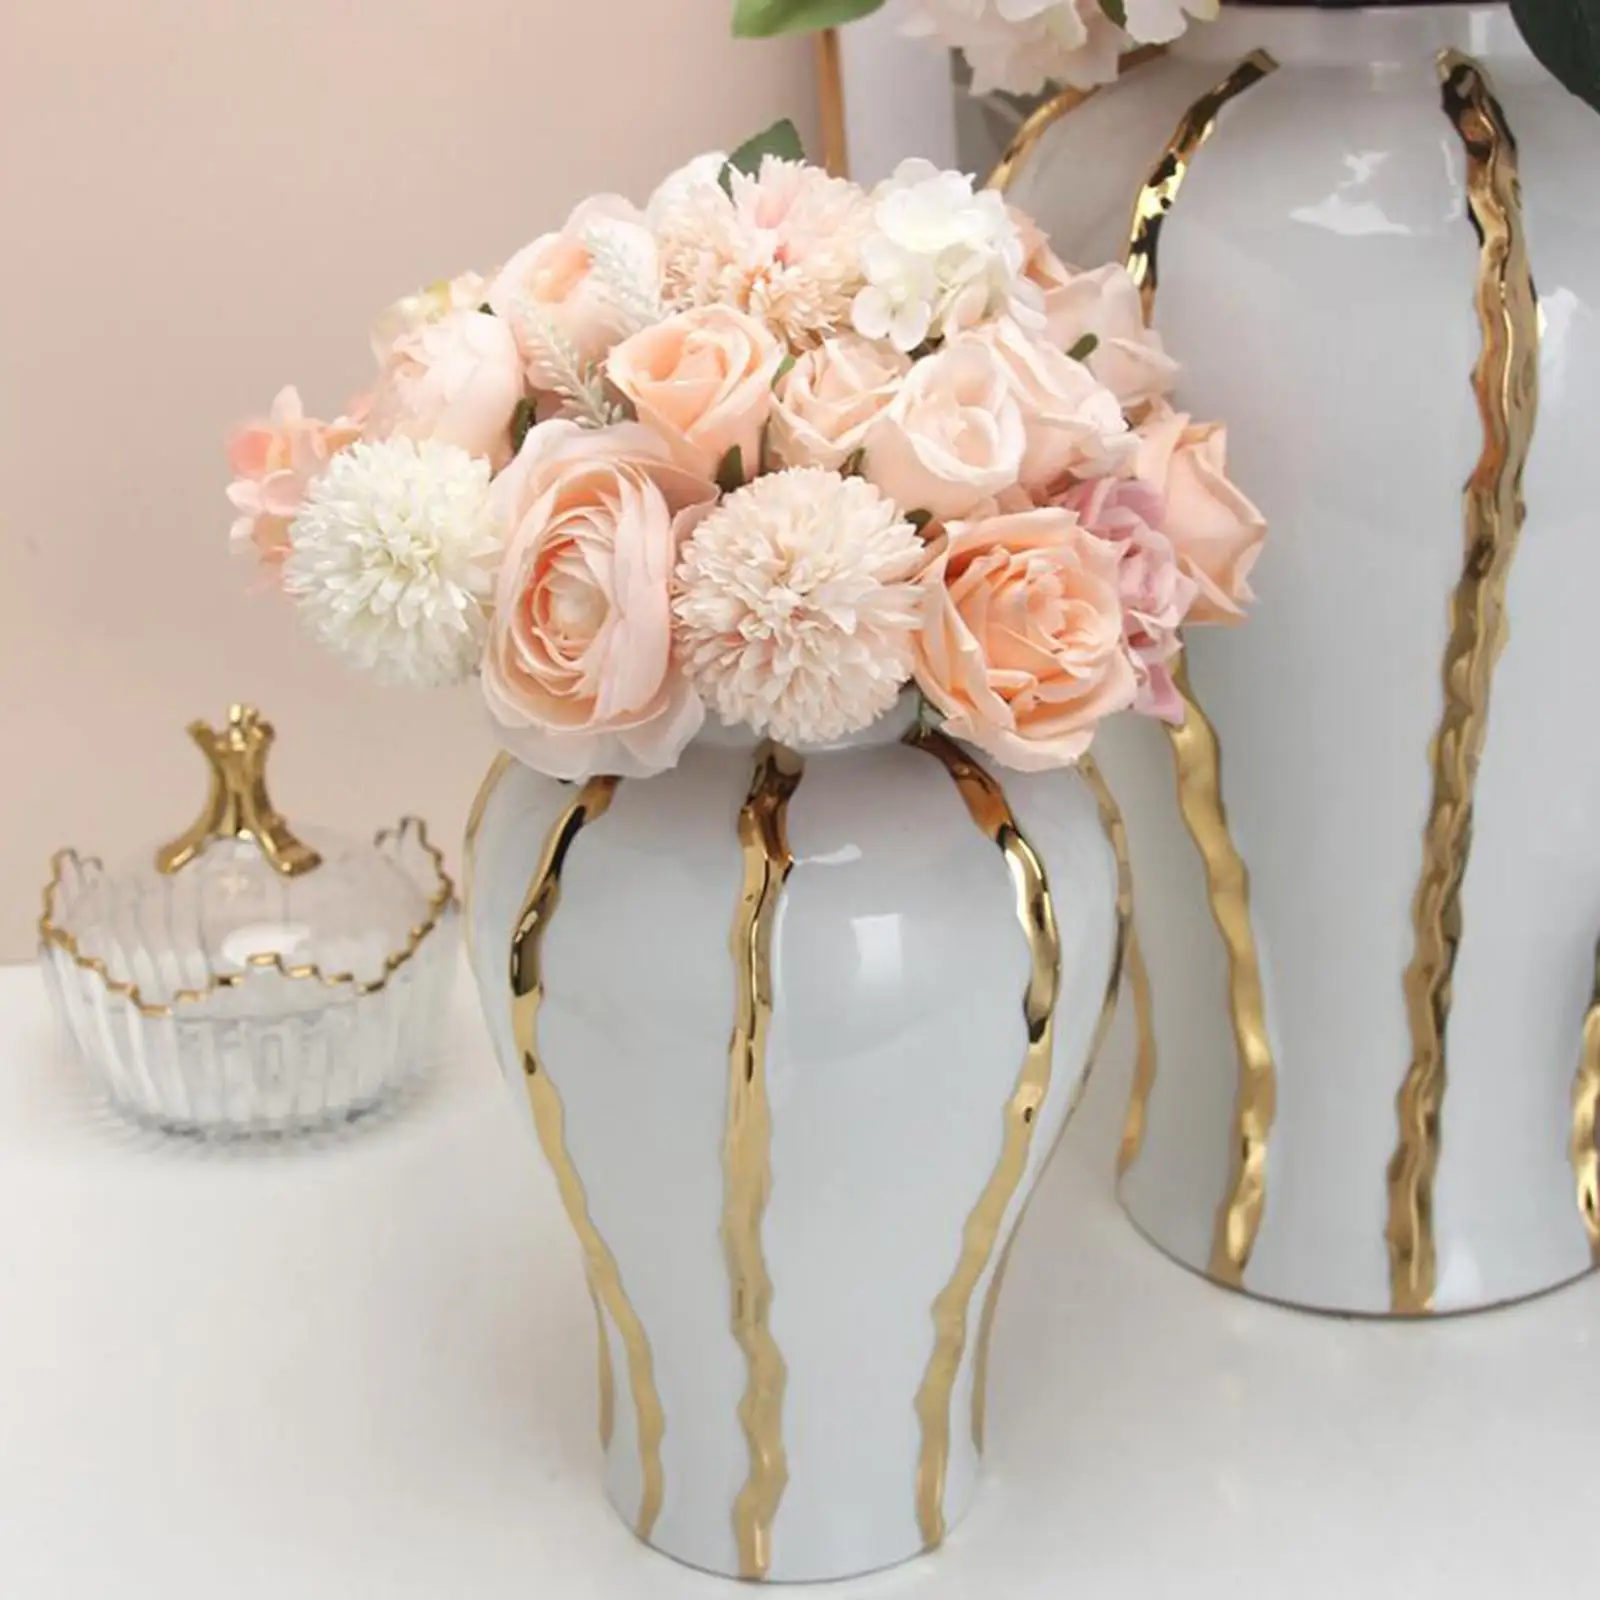 Ceramic Flower Vase Fine Workmanship Display Porcelain Ginger Jar Temple Jar for Bedroom Weddings Livingroom Office Desk